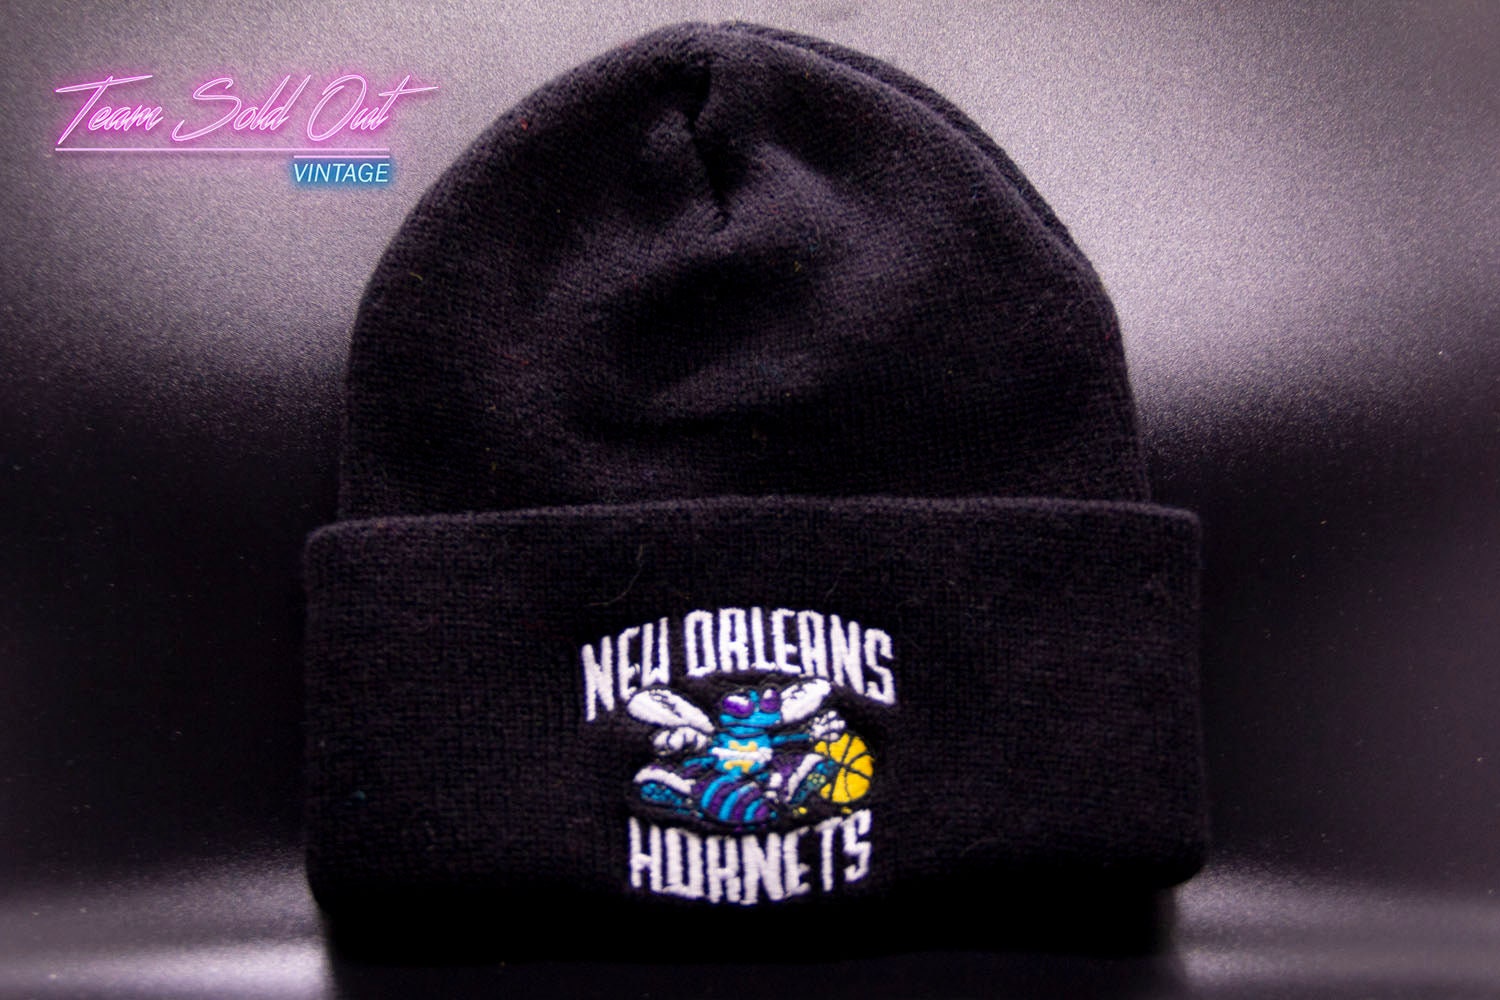 New Orleans Hornets 90s Retro Vintage Chris Paul Basketball Unisex